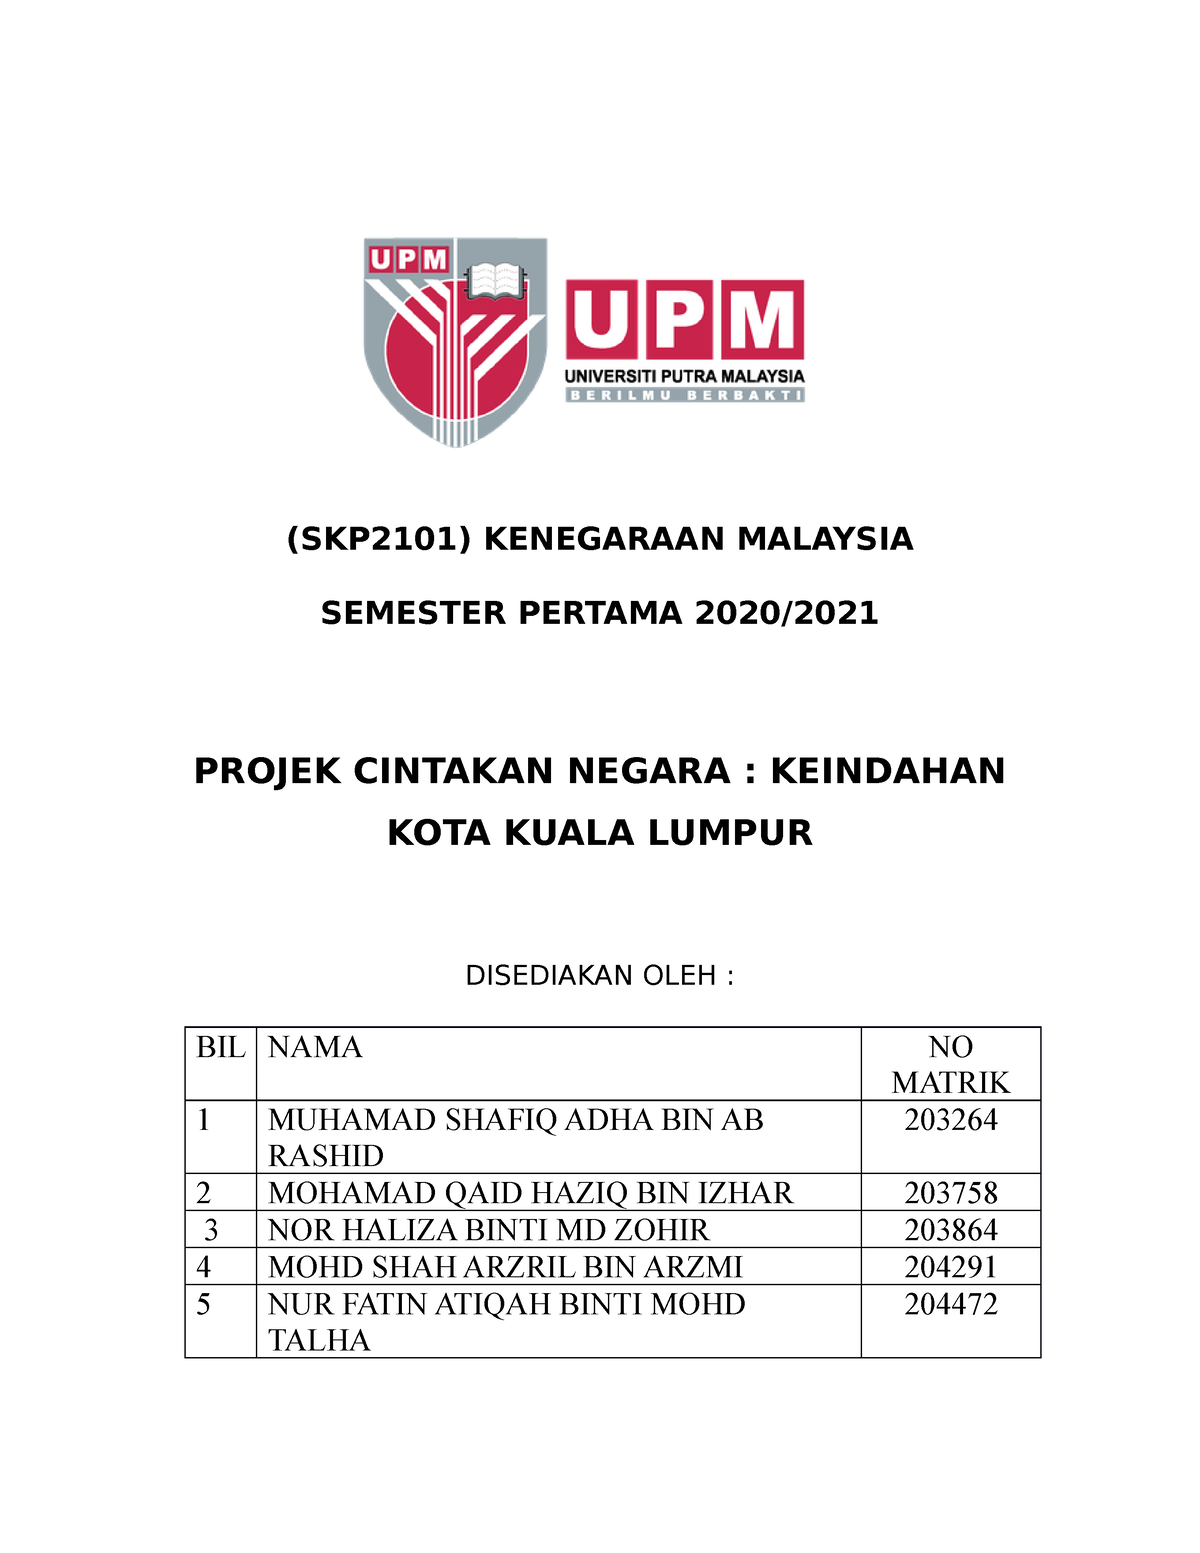 contoh assignment kenegaraan malaysia uum